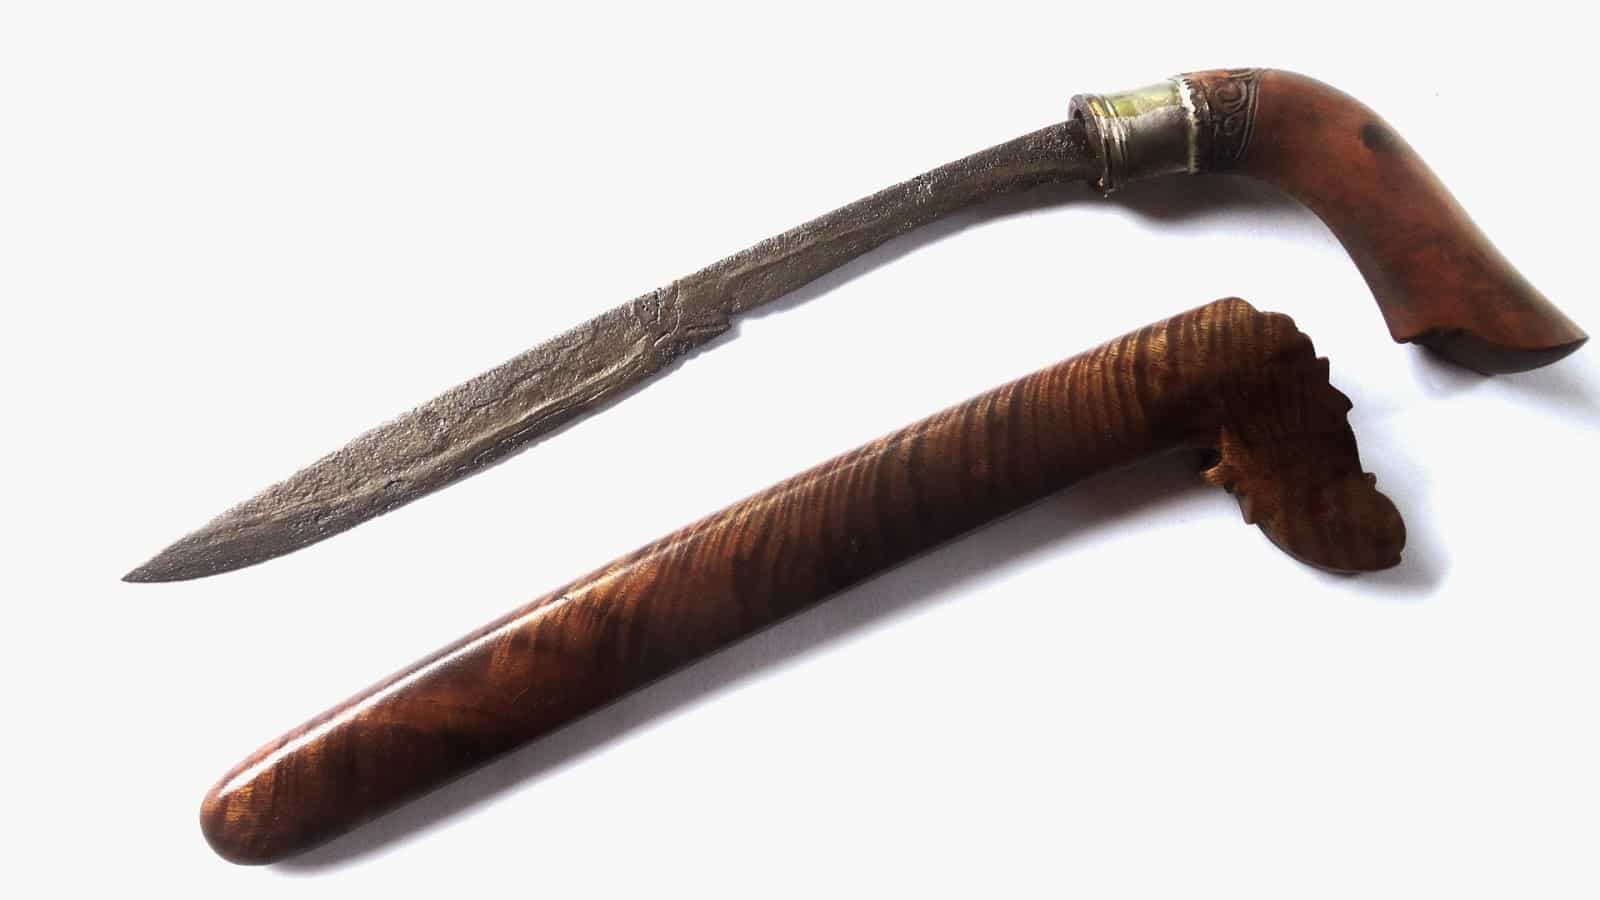 Senjata tradisional badik dan rencong berasal dari daerah